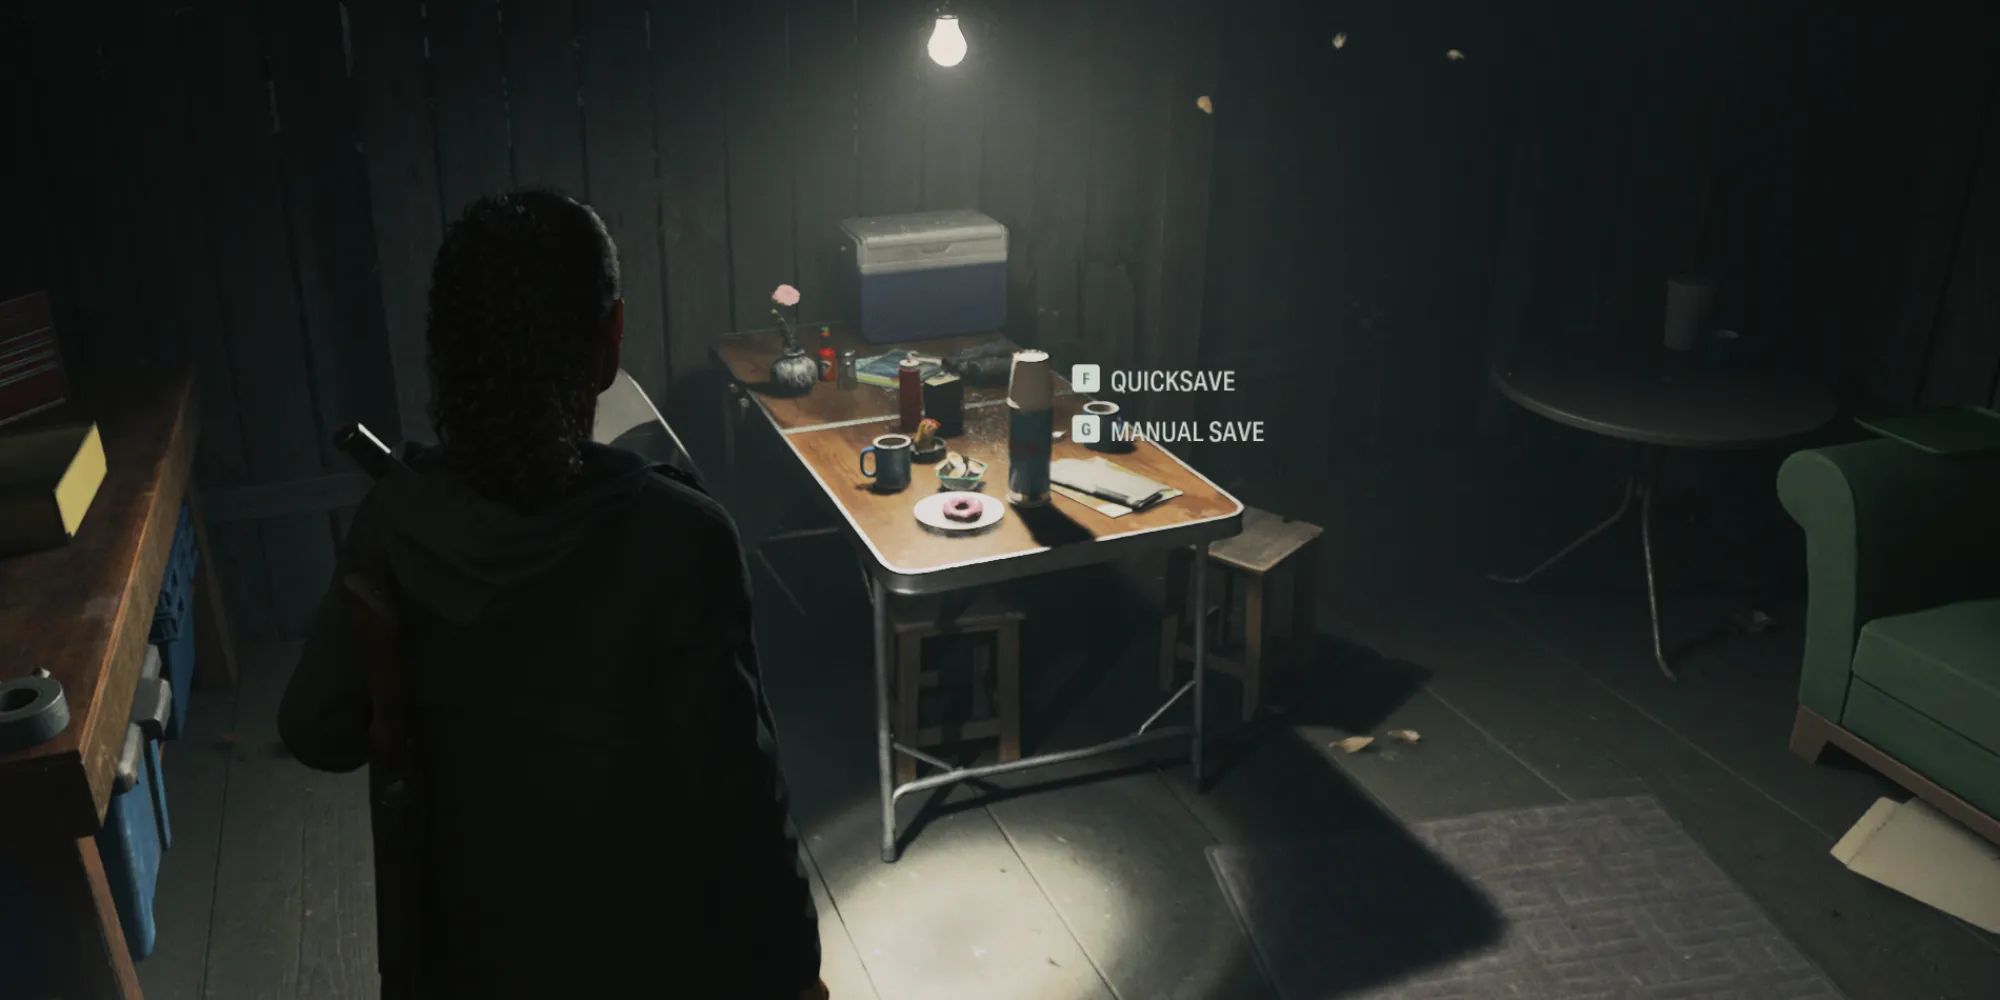 Сага Андерсон использует кофе для сохранения игры в Алане Уэйке 2